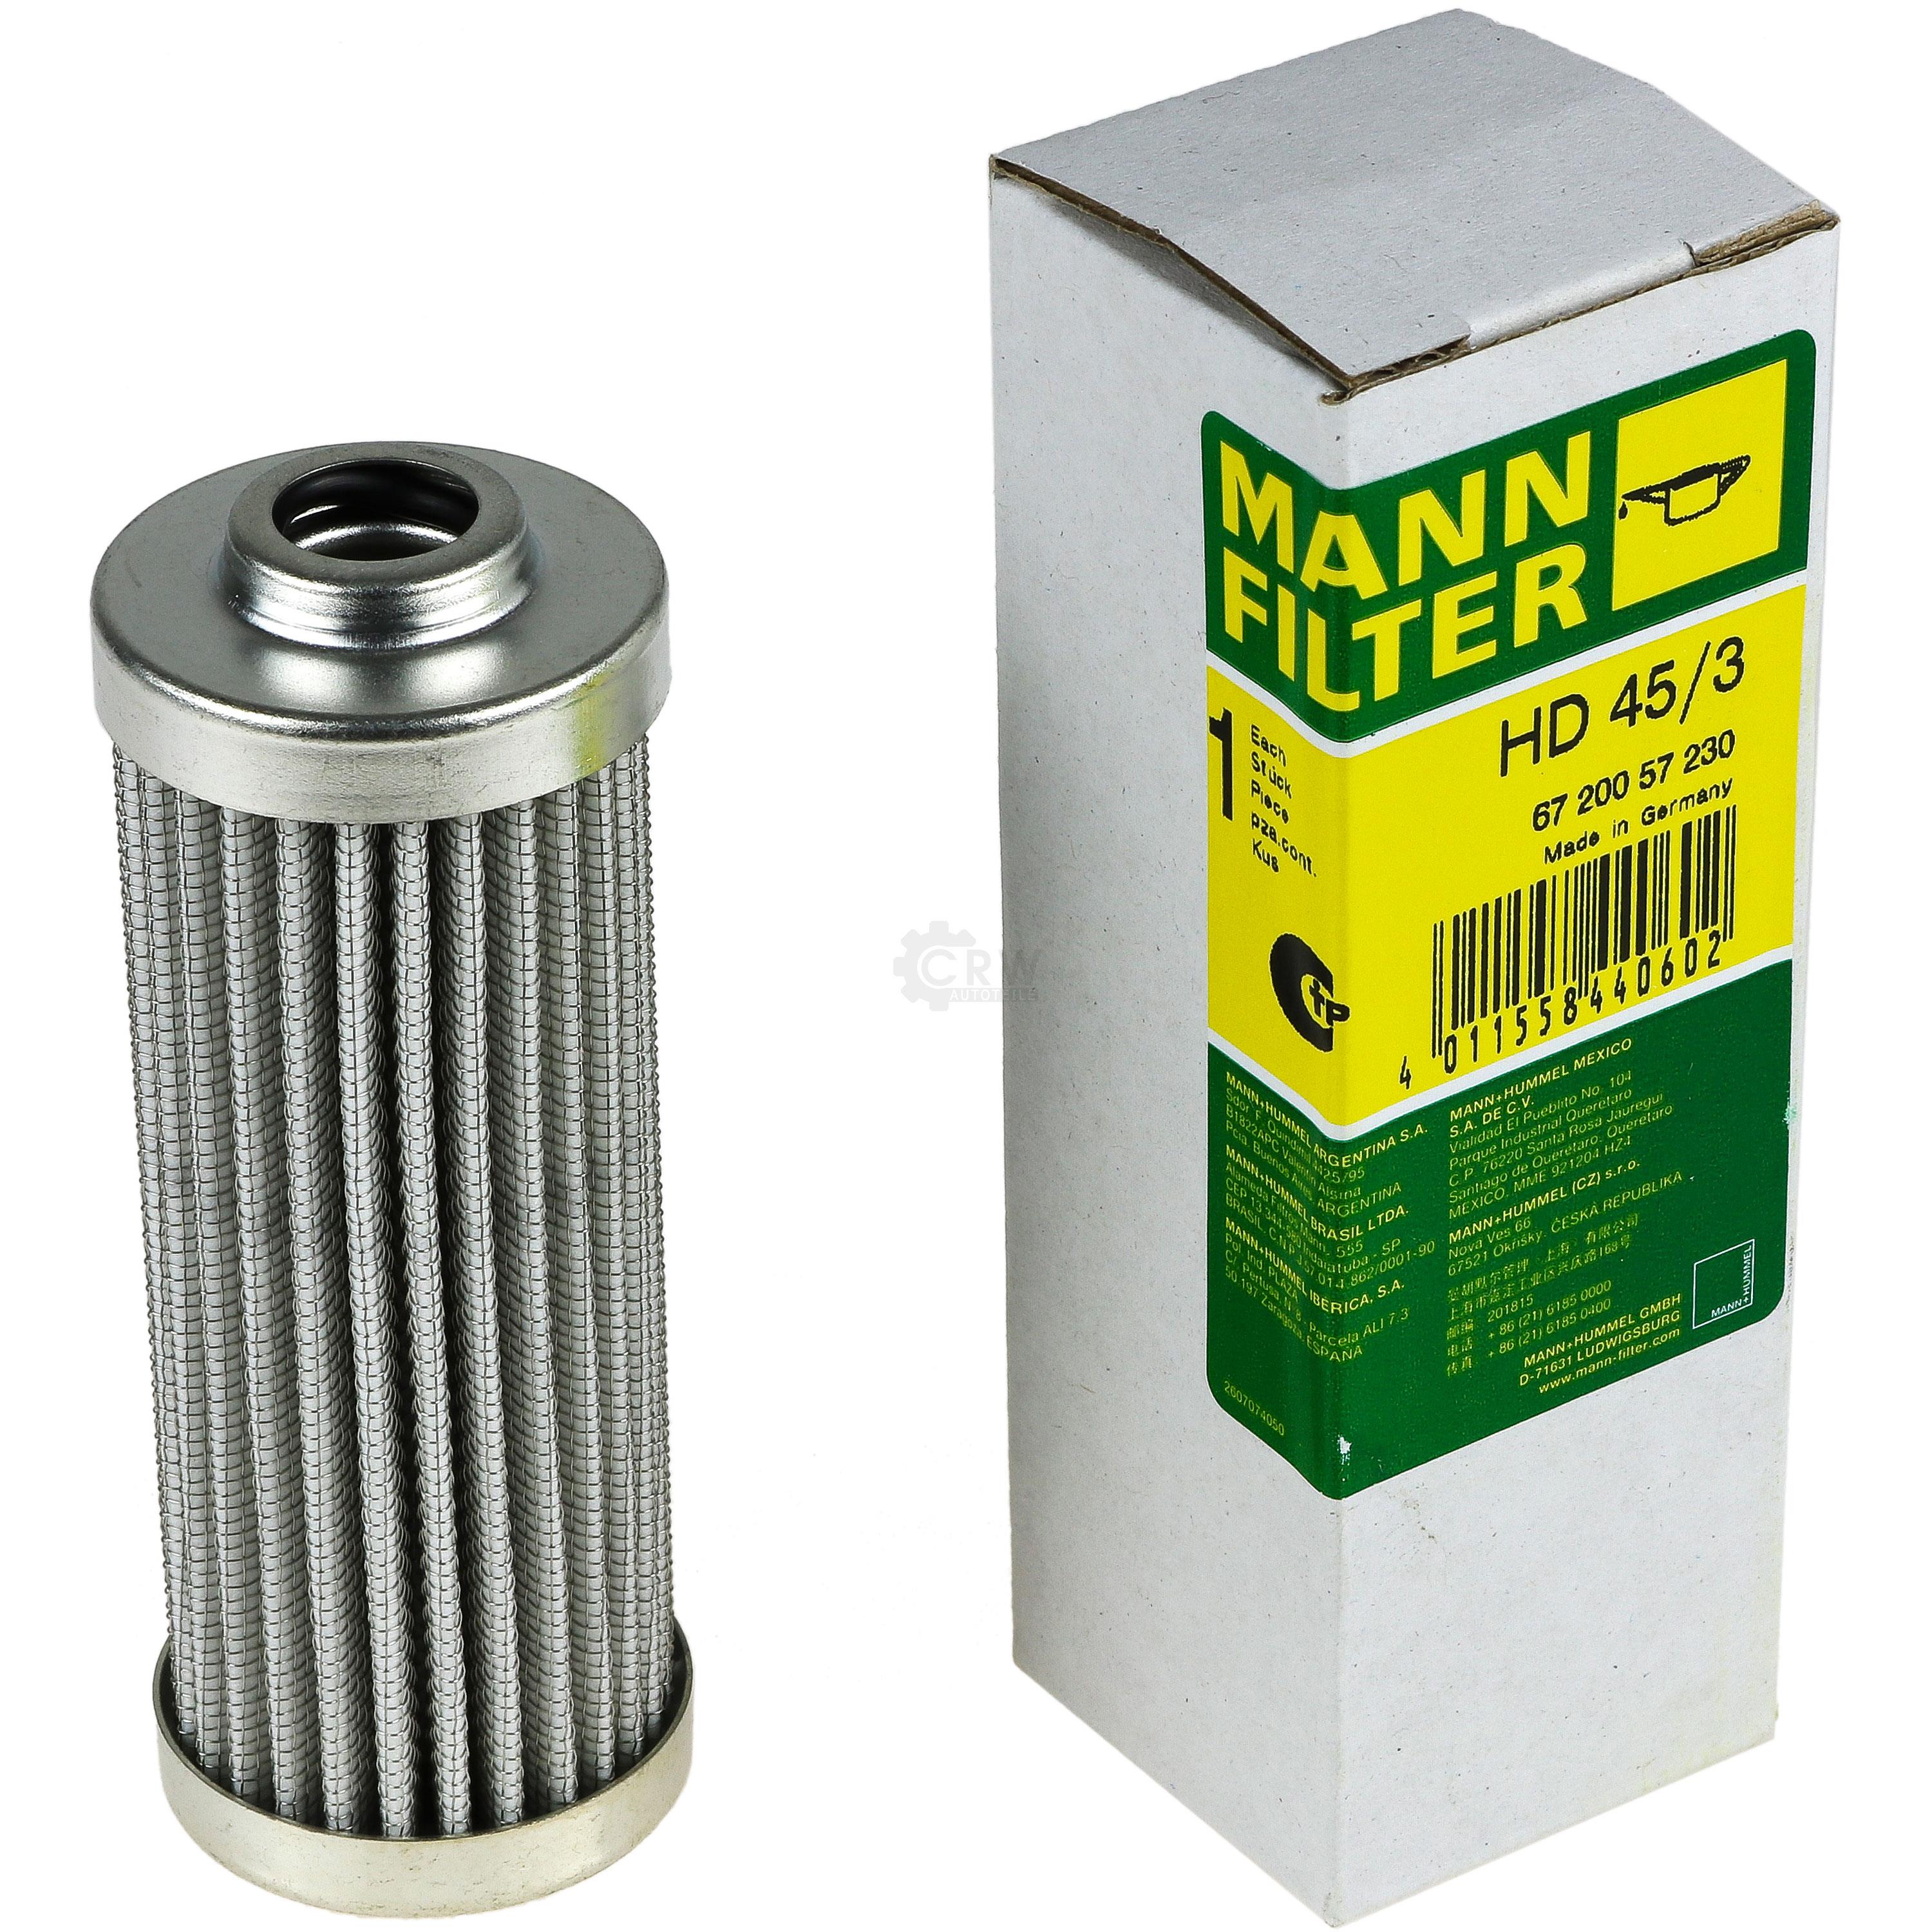 MANN-FILTER Filter für Arbeitshydraulik HD 45/3 Ölfilter Oil